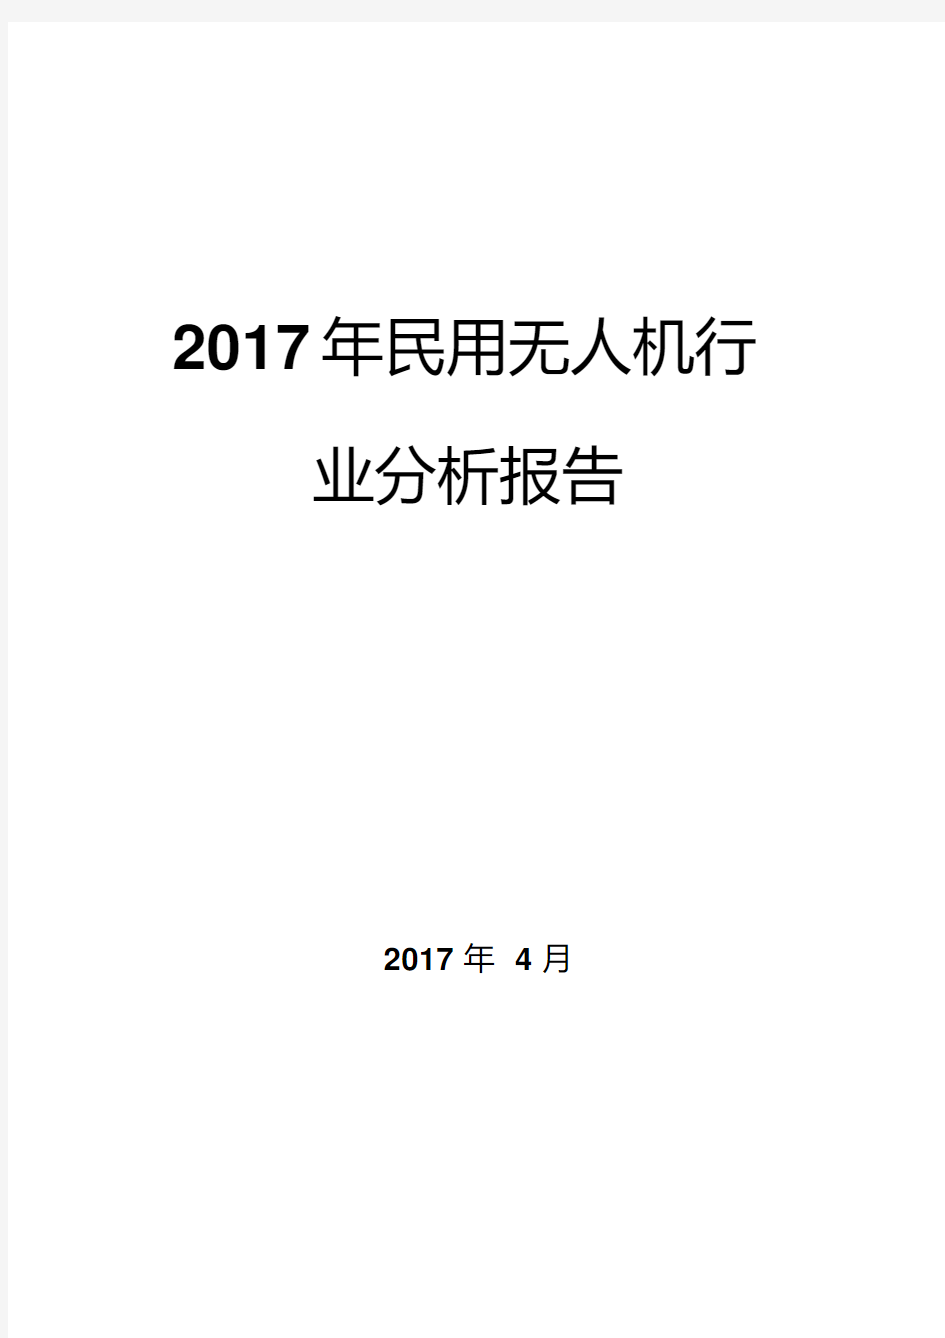 2017年民用无人机行业分析报告